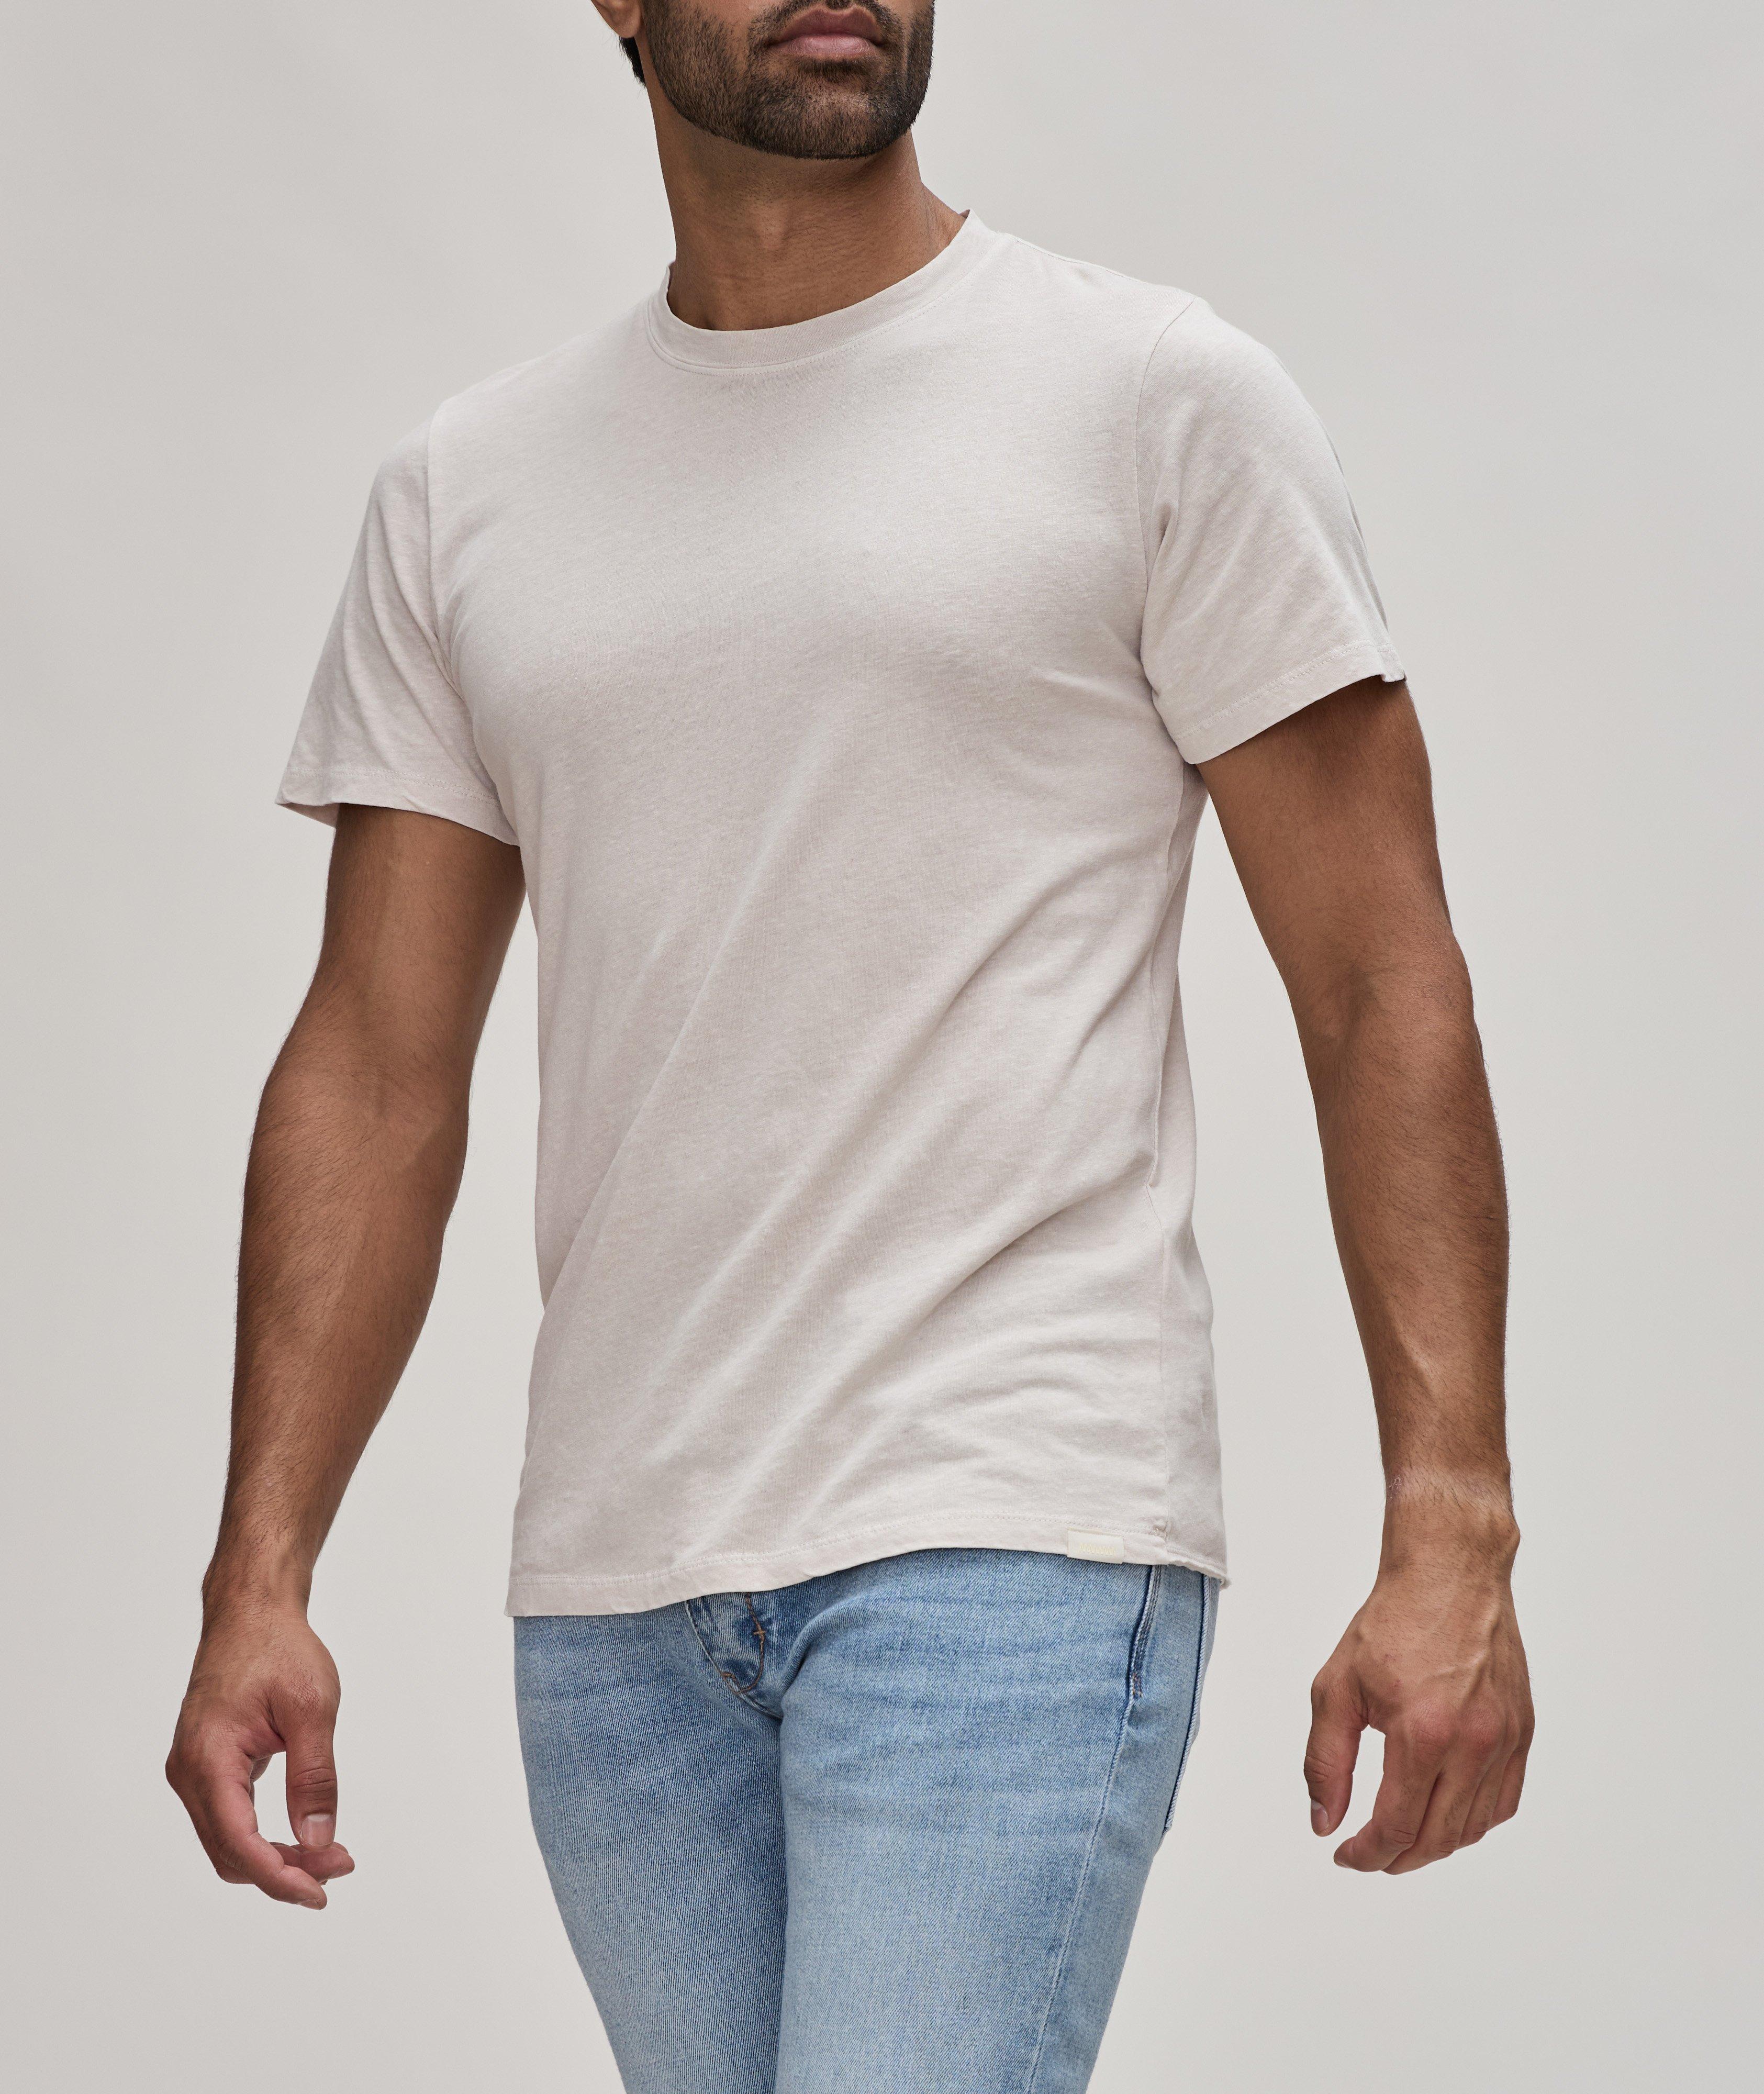  Cotton-Linen Layer T-Shirt  image 1